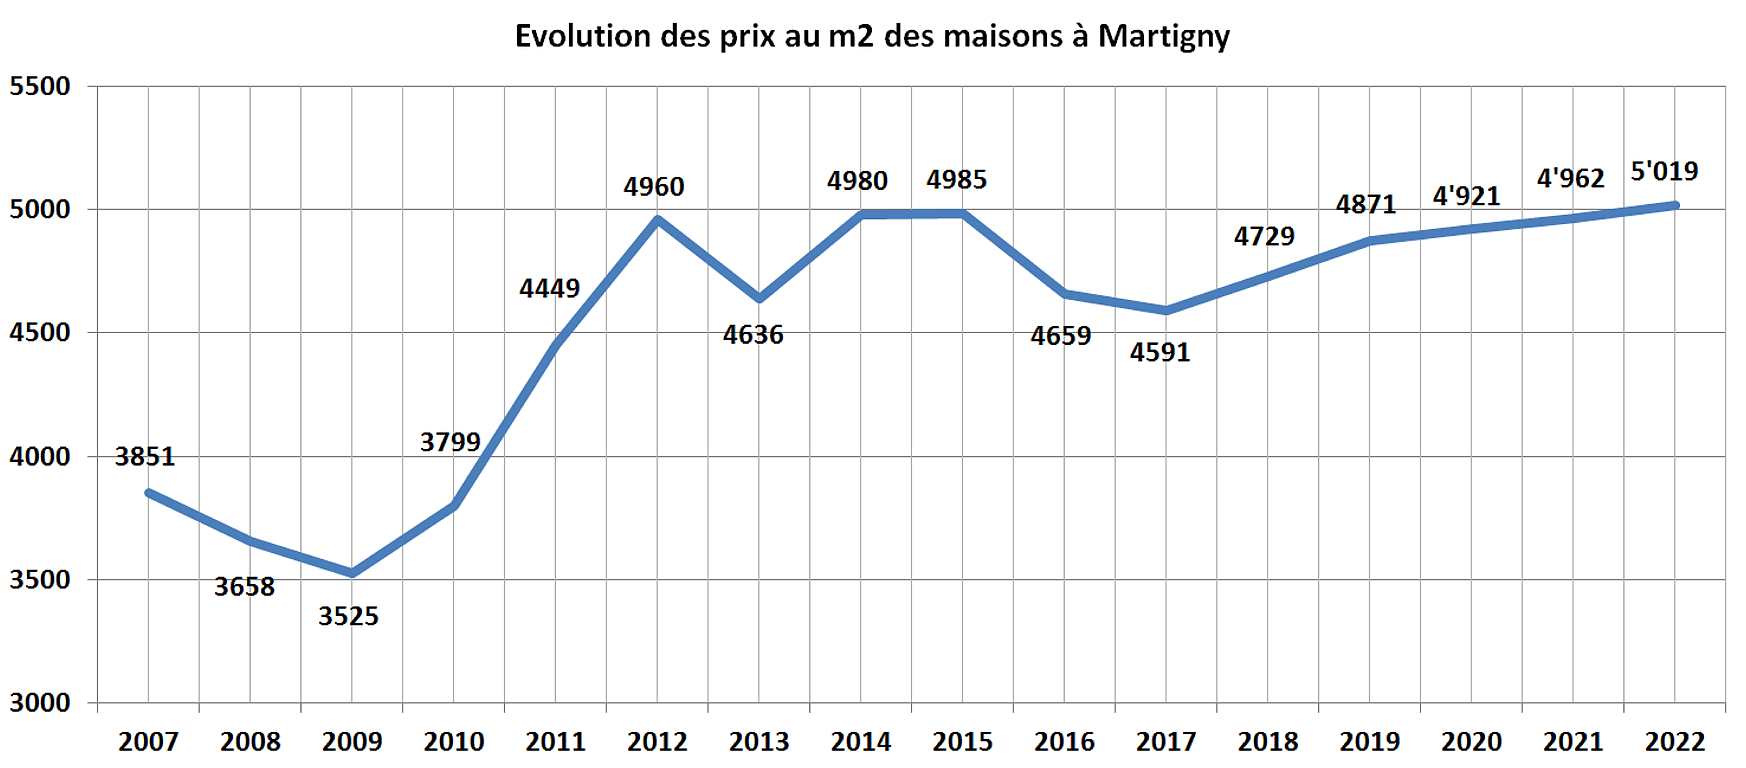 evolution prix m2 maison martigny 2022